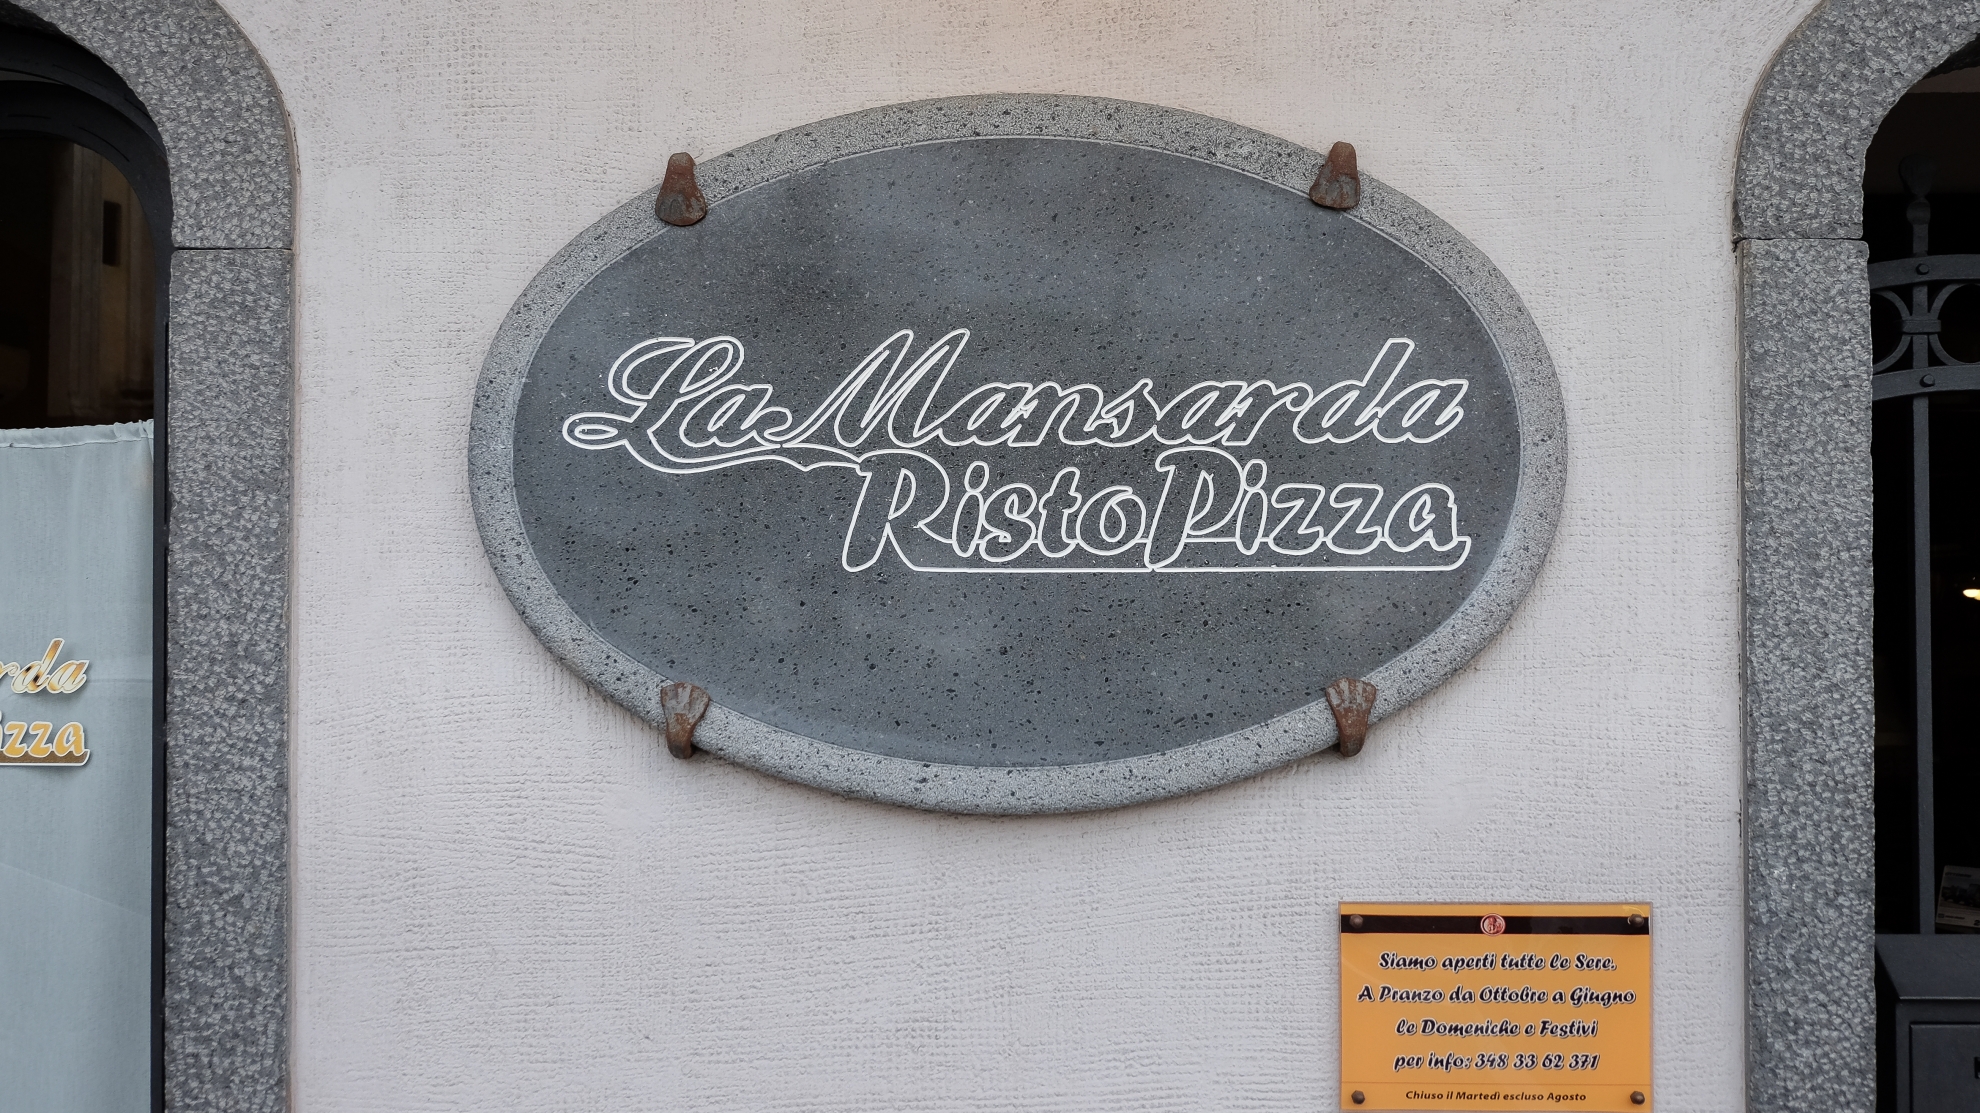 La Mansarda Ristopizza - Pizzeria Ristorante, Santa Venerina